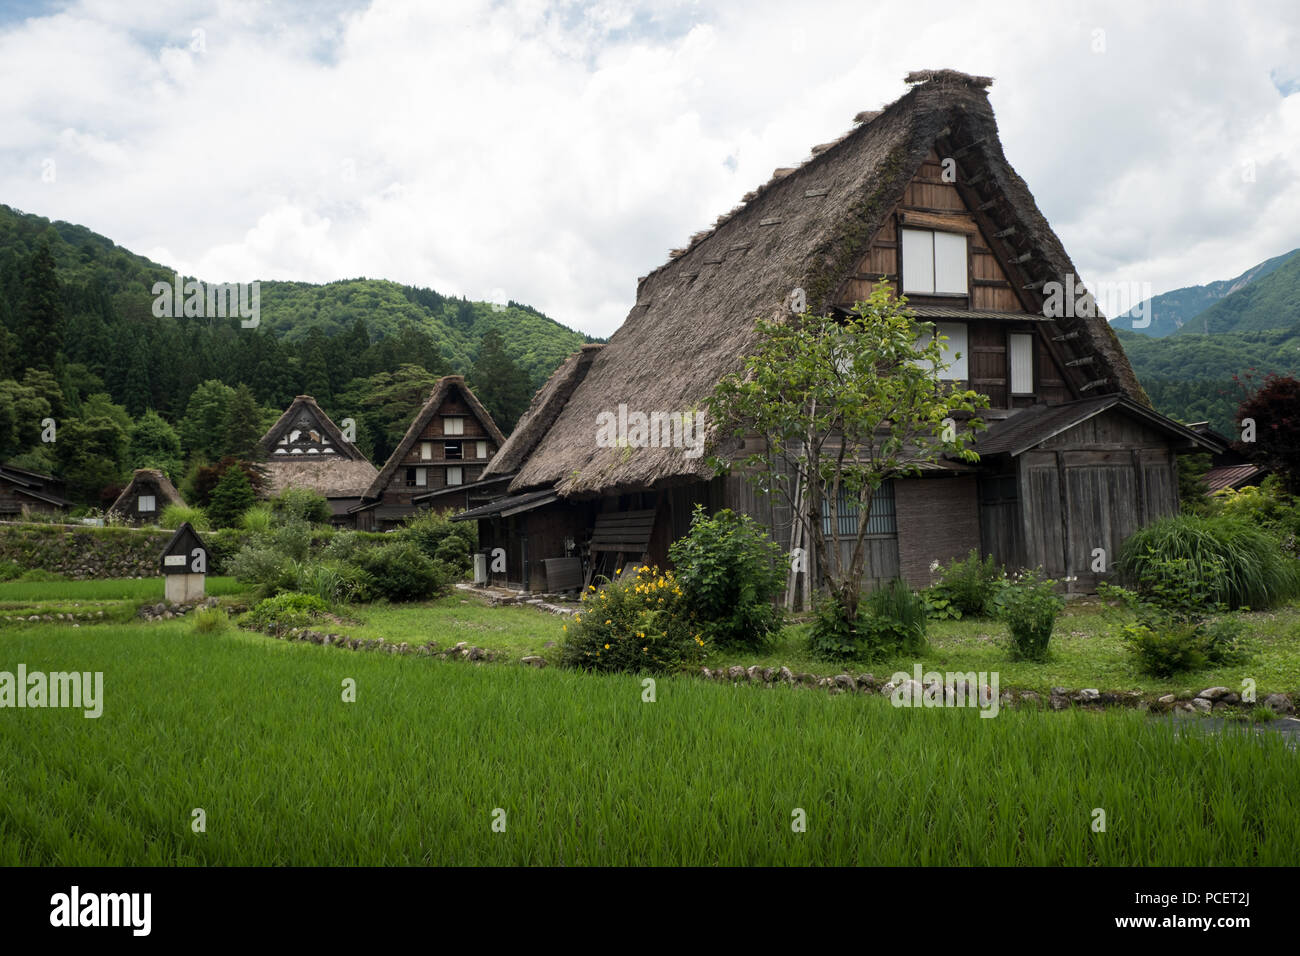 Le village historique de Shirakawa-go, site du patrimoine mondial de l'UNESCO, dans le centre du Japon Banque D'Images